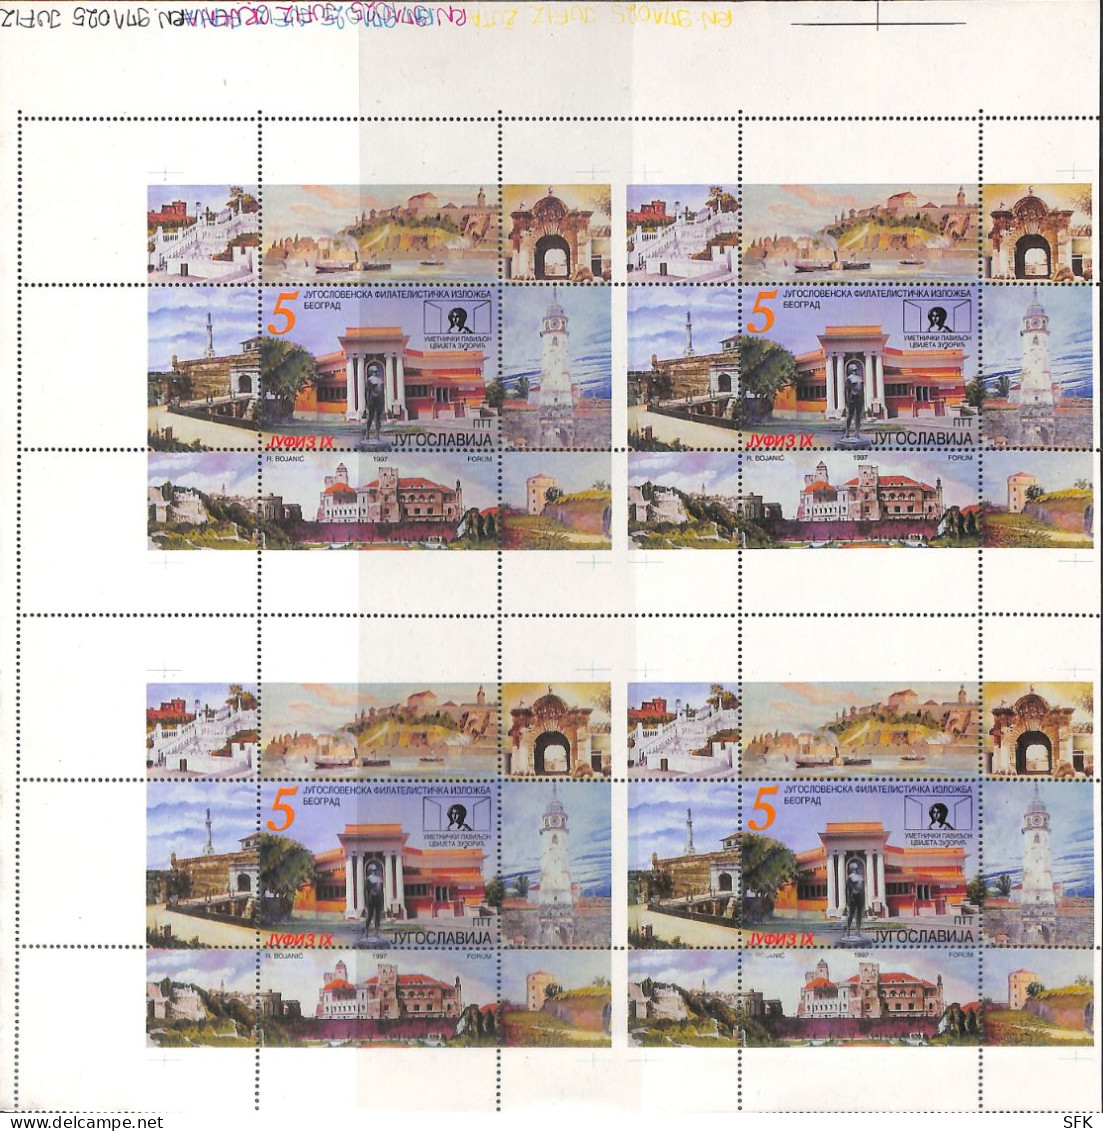 1991 PHILATELIC EXHIBITION JUFIZ IX, Plate WITH 4 MINIATURE SHEETS (BLOCKS) IN Se-tenant.MNH - Geschnittene, Druckproben Und Abarten